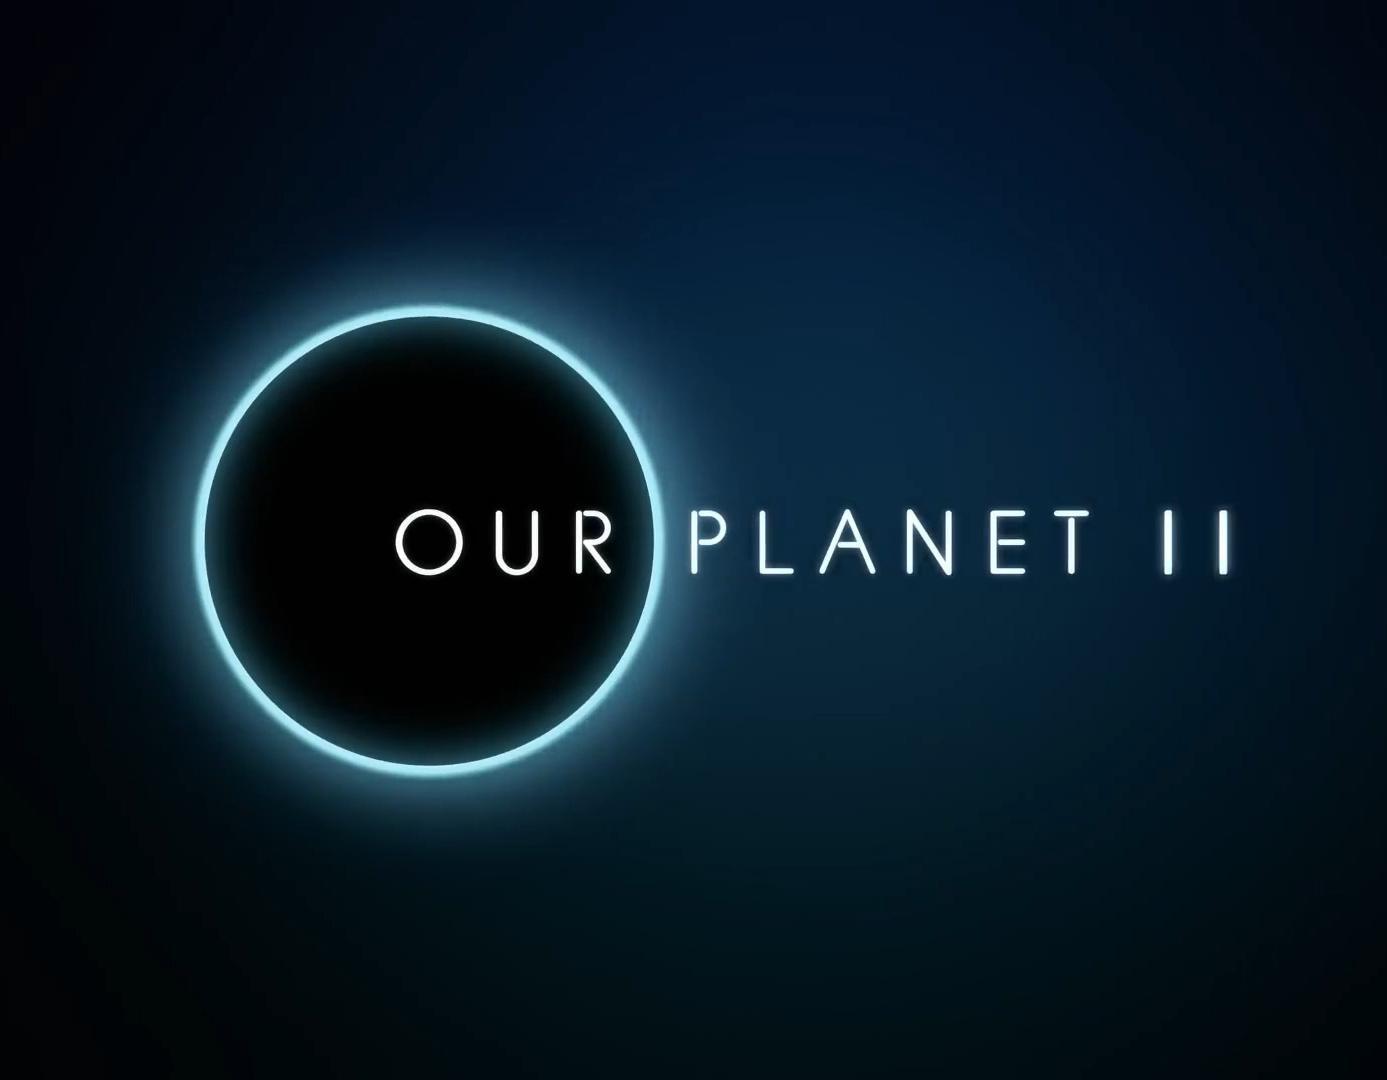 Notre planète II